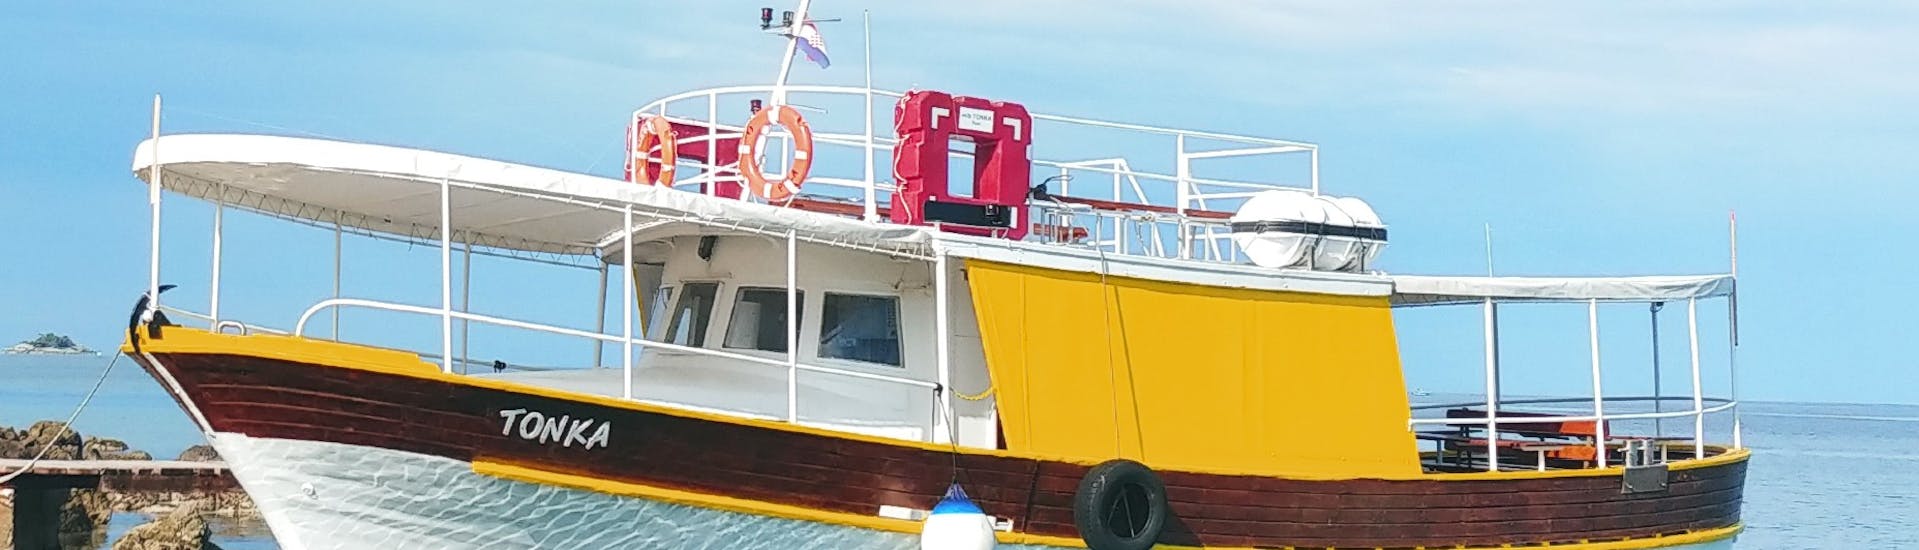 Bild des Bootes Tonka während der Bootstour um Rovinj mit Schwimmen, veranstaltet von Boat Excursions Tonka Rovinj.